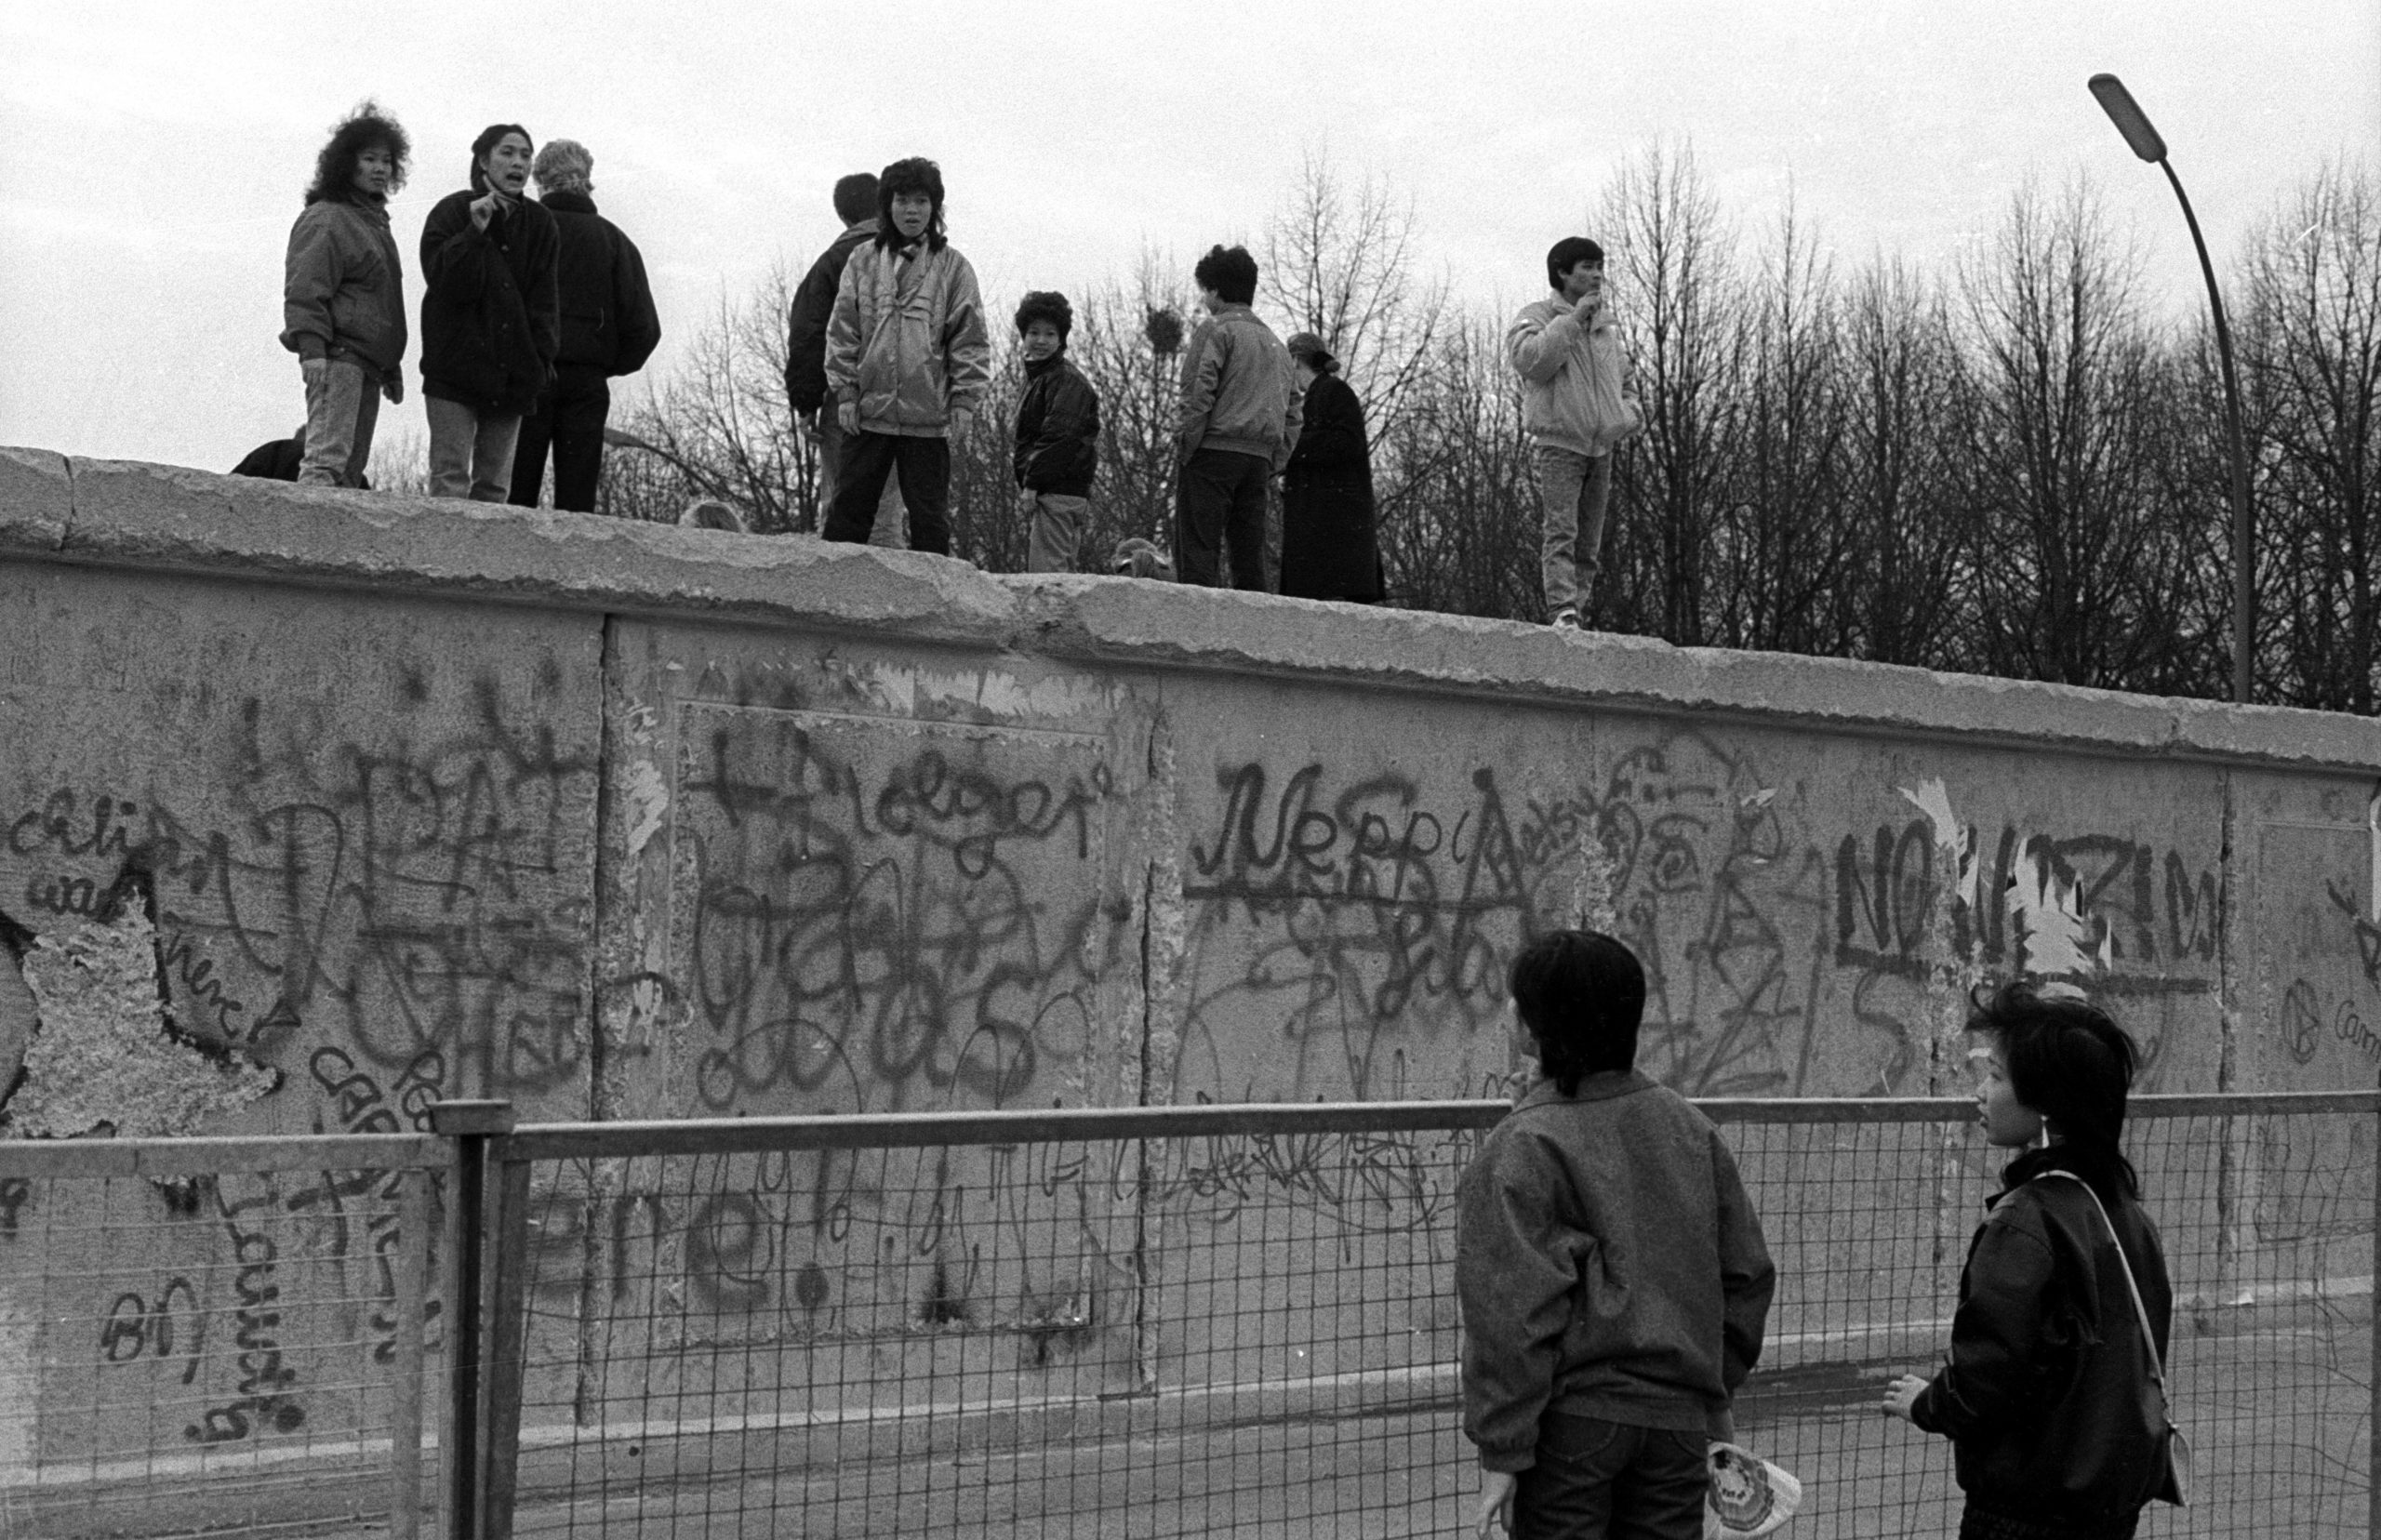 Vietnamesische Vertragsarbeiter auf der Berliner Mauer in Ost-Berlin.  Foto: Imago/Werner Schulze  